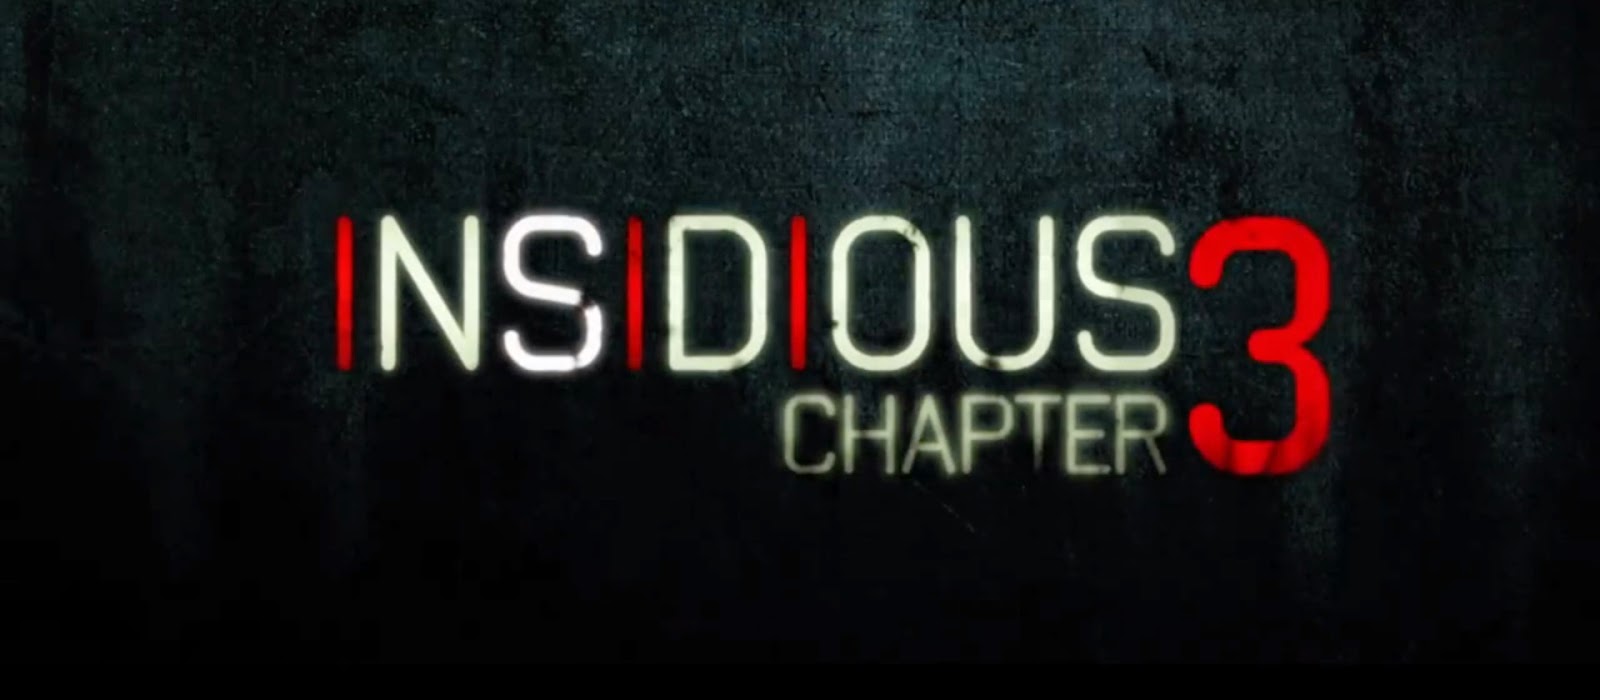 free insidious 3 full movie